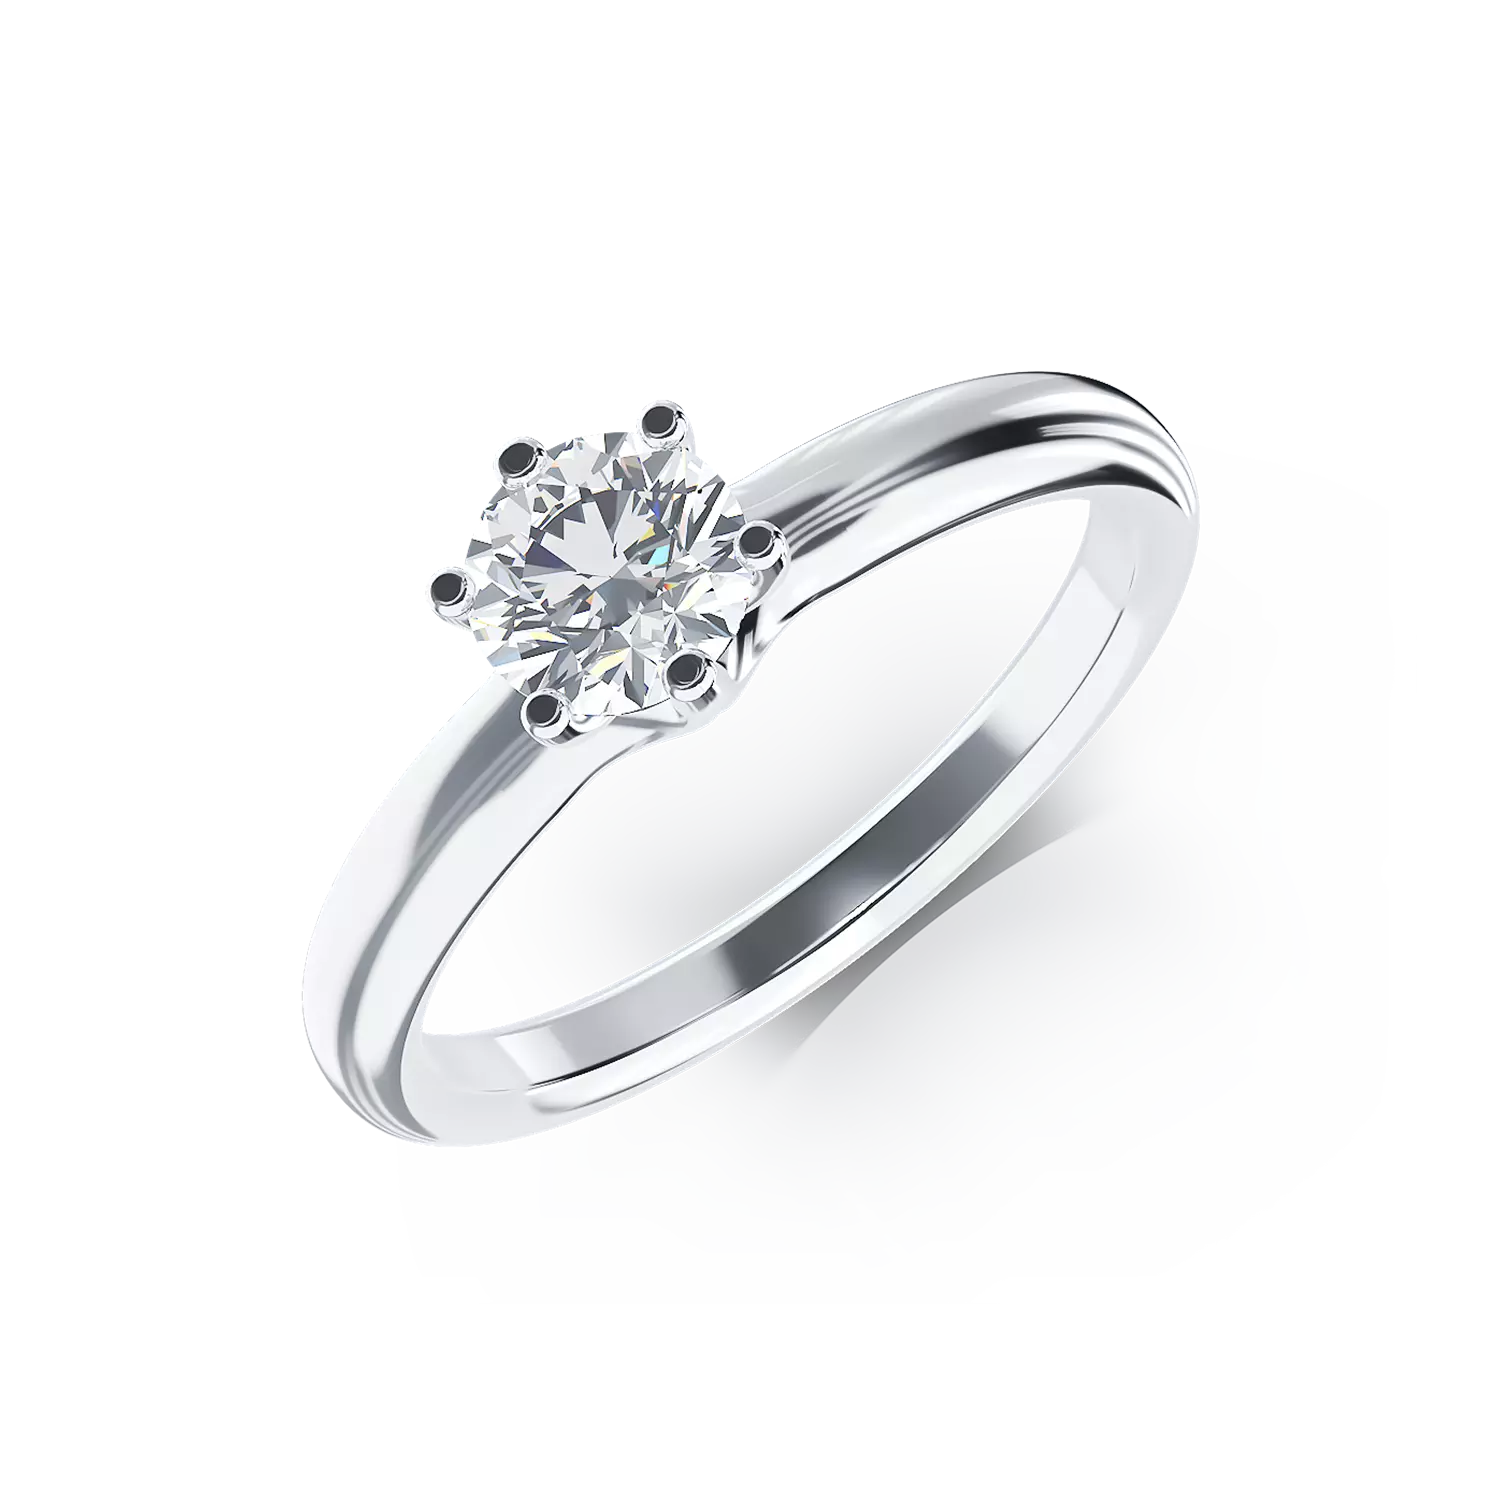 Eljegyzési gyűrű 18K-os fehér aranyból 0,5ct gyémánttal. Gramm: 2,50